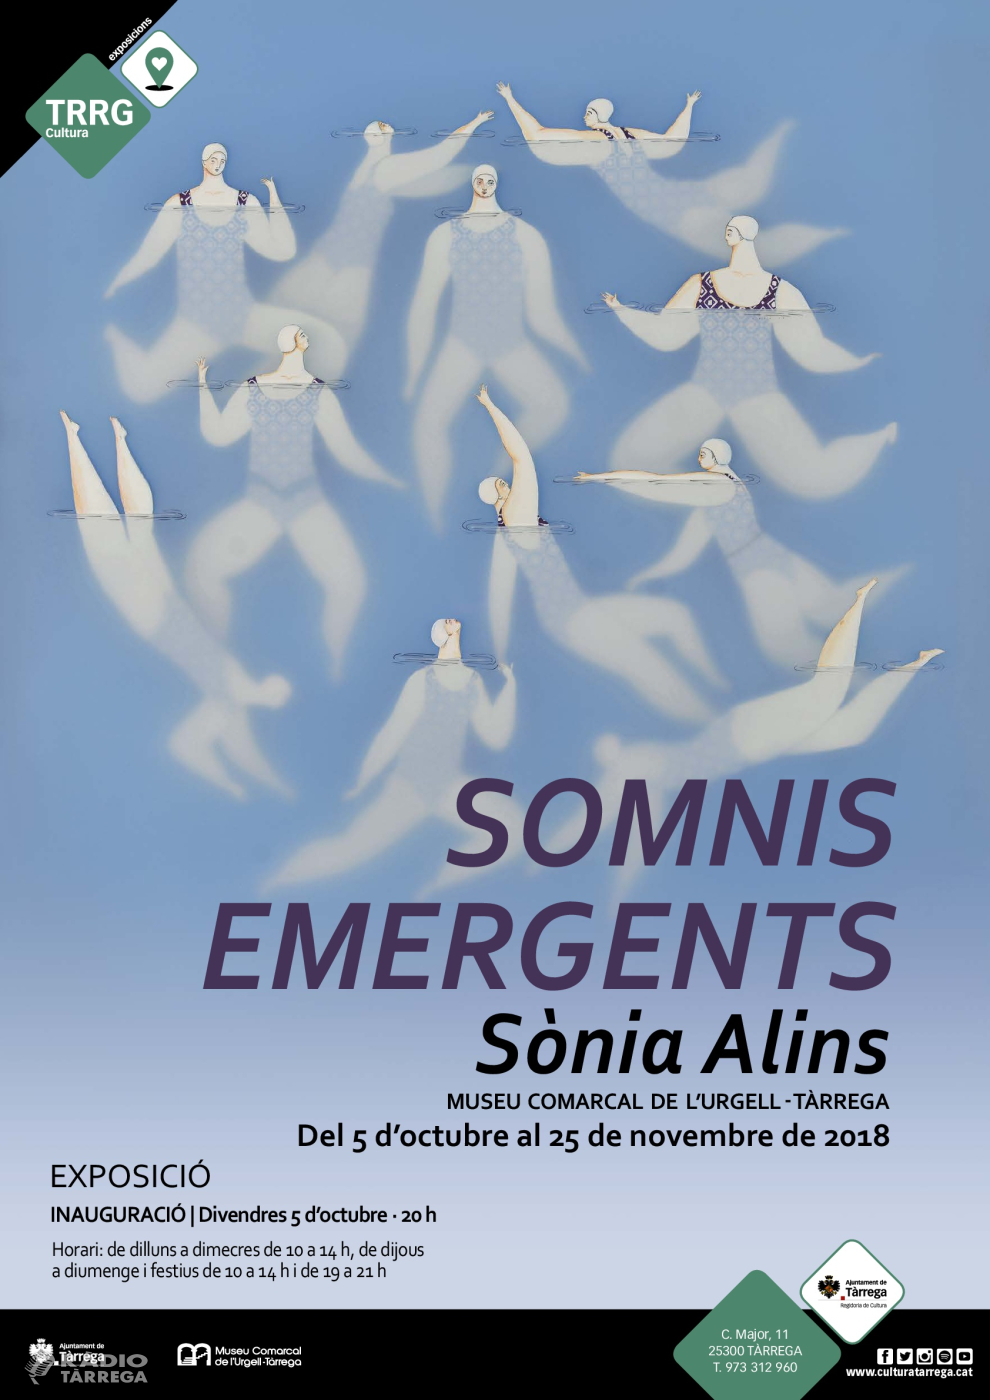 El Museu Comarcal de l'Urgell – Tàrrega inaugura el divendres 5 d’octubre la mostra “Somnis emergents” de la il·lustradora lleidatana Sònia Alins